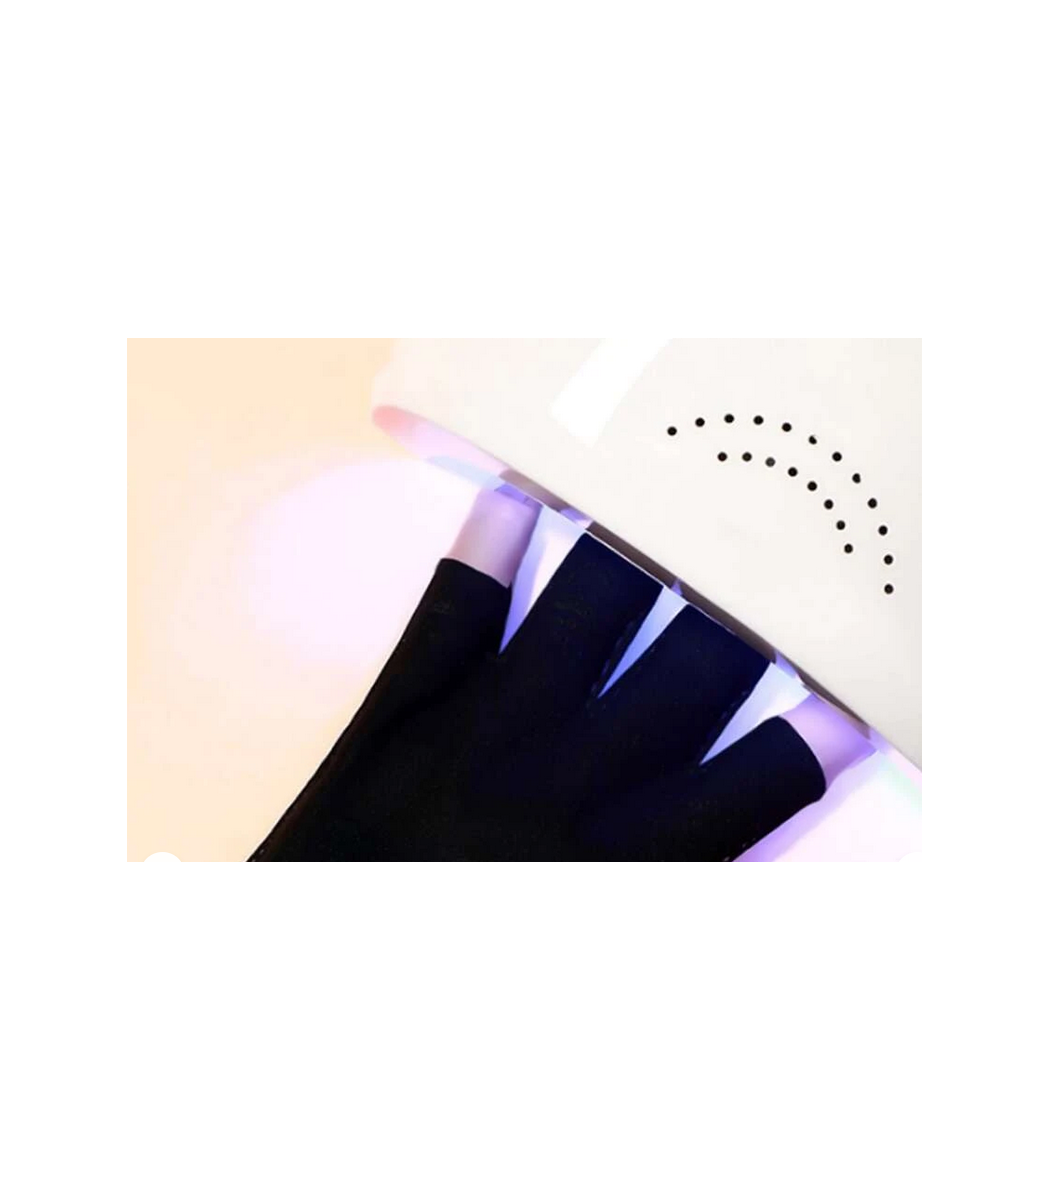 Uv Glove For GelΓάντια Nail Art ζευγος Προστατευτικό κάλυμμα για τα δάχτυλα